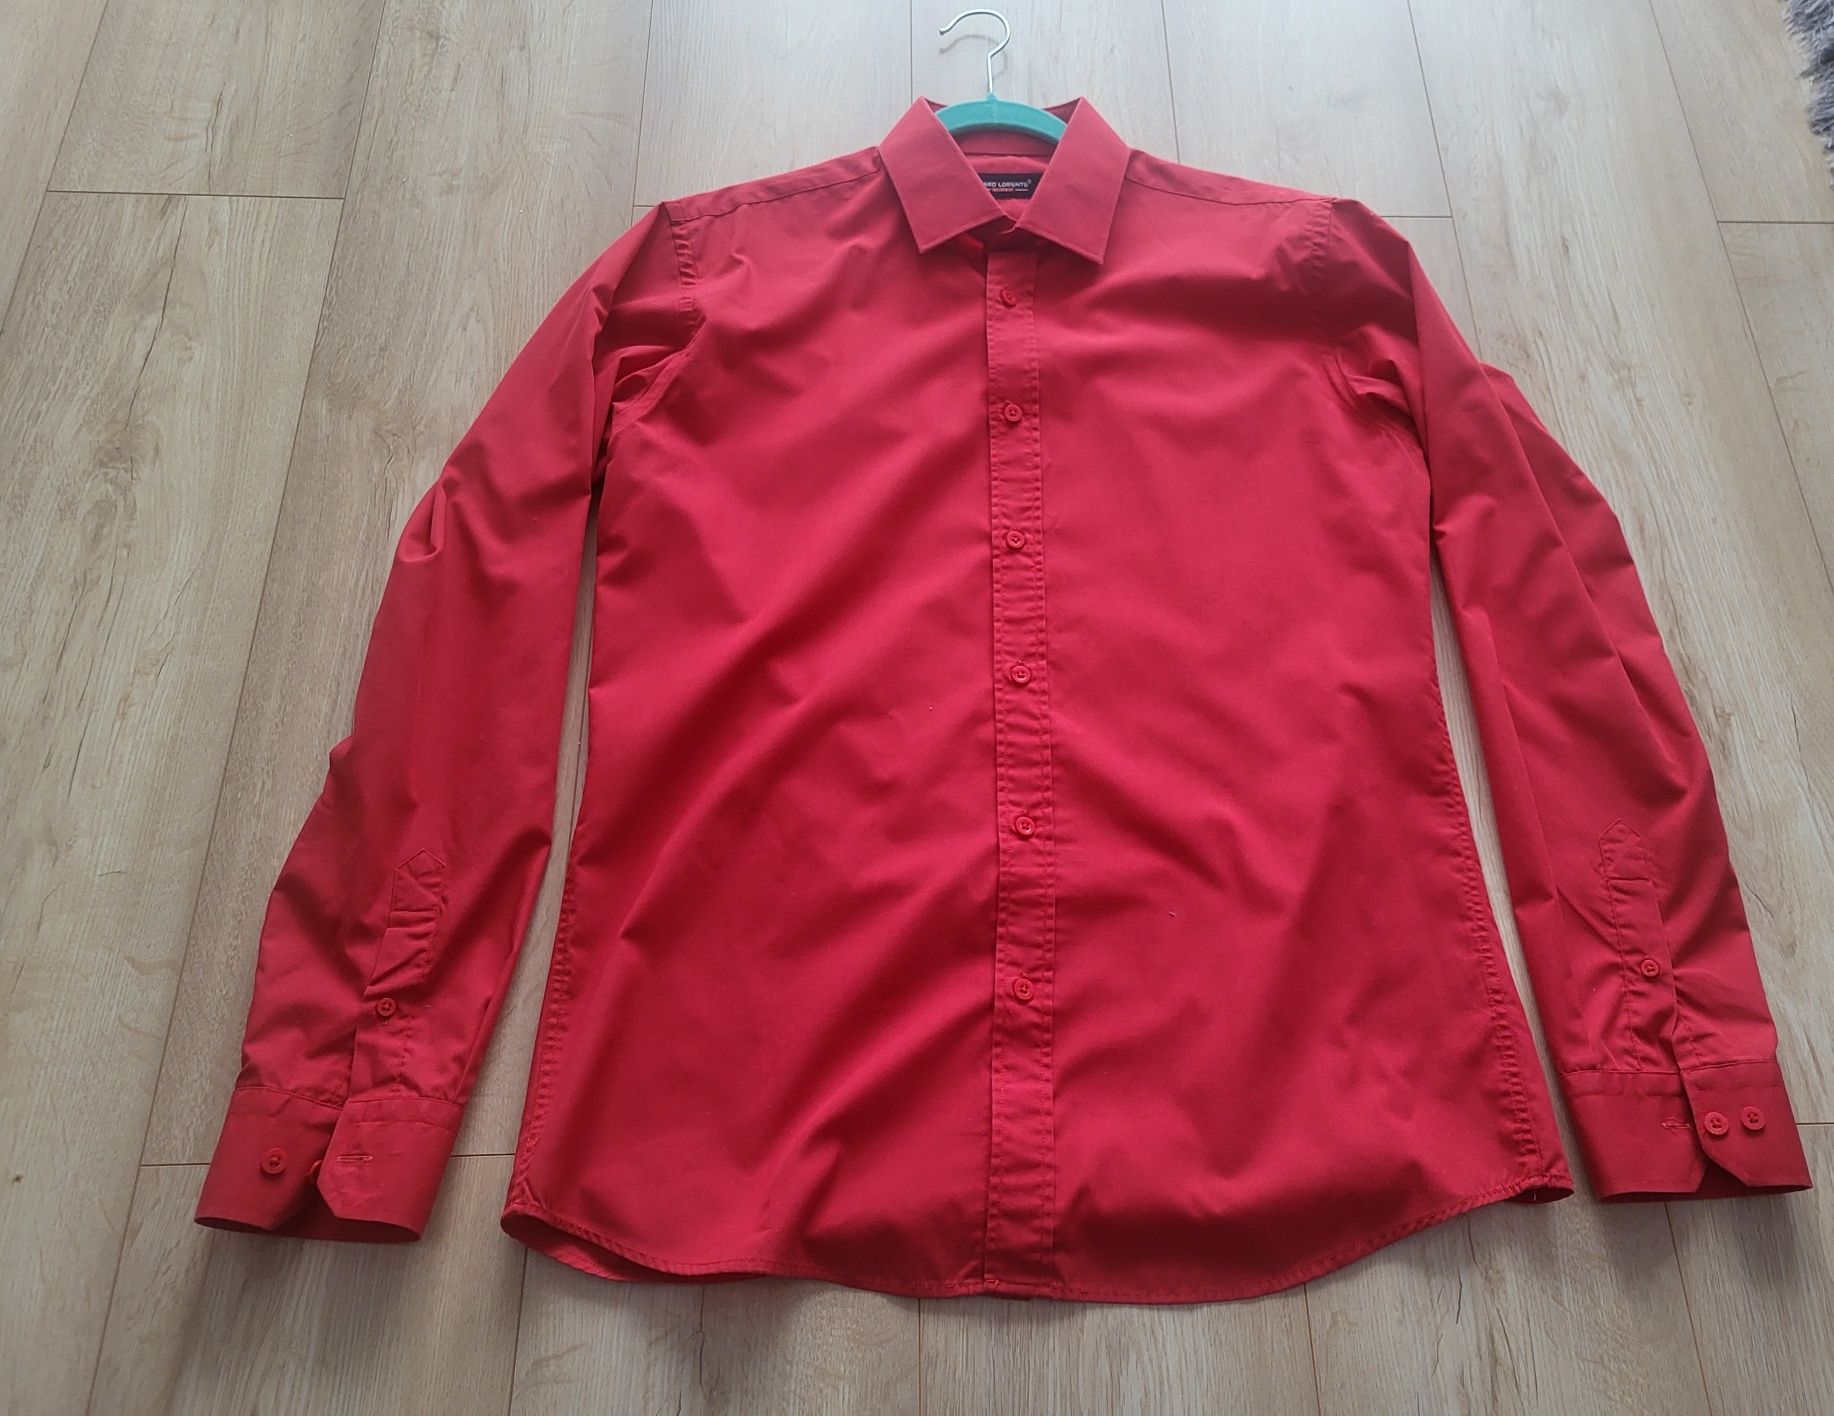 Koszula Pako Lorente - czerwona, rozmiar L